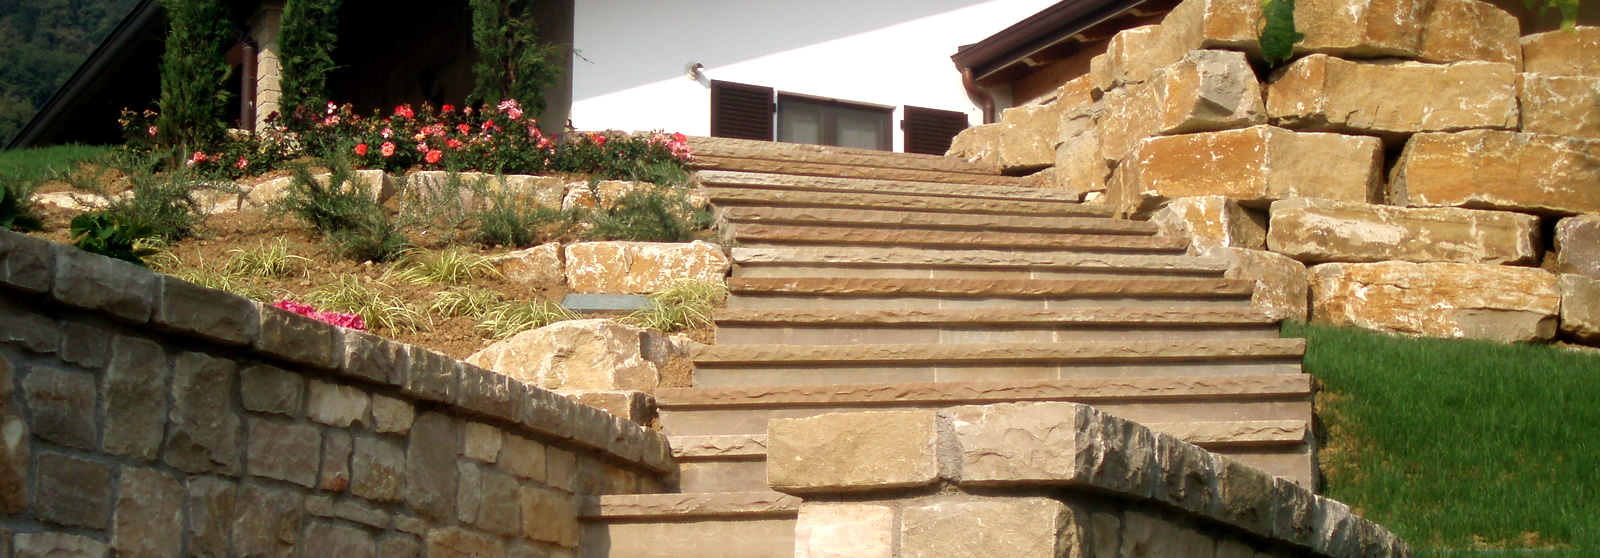 Interventi su scale e mura a secco per giardino in pietra di Credaro